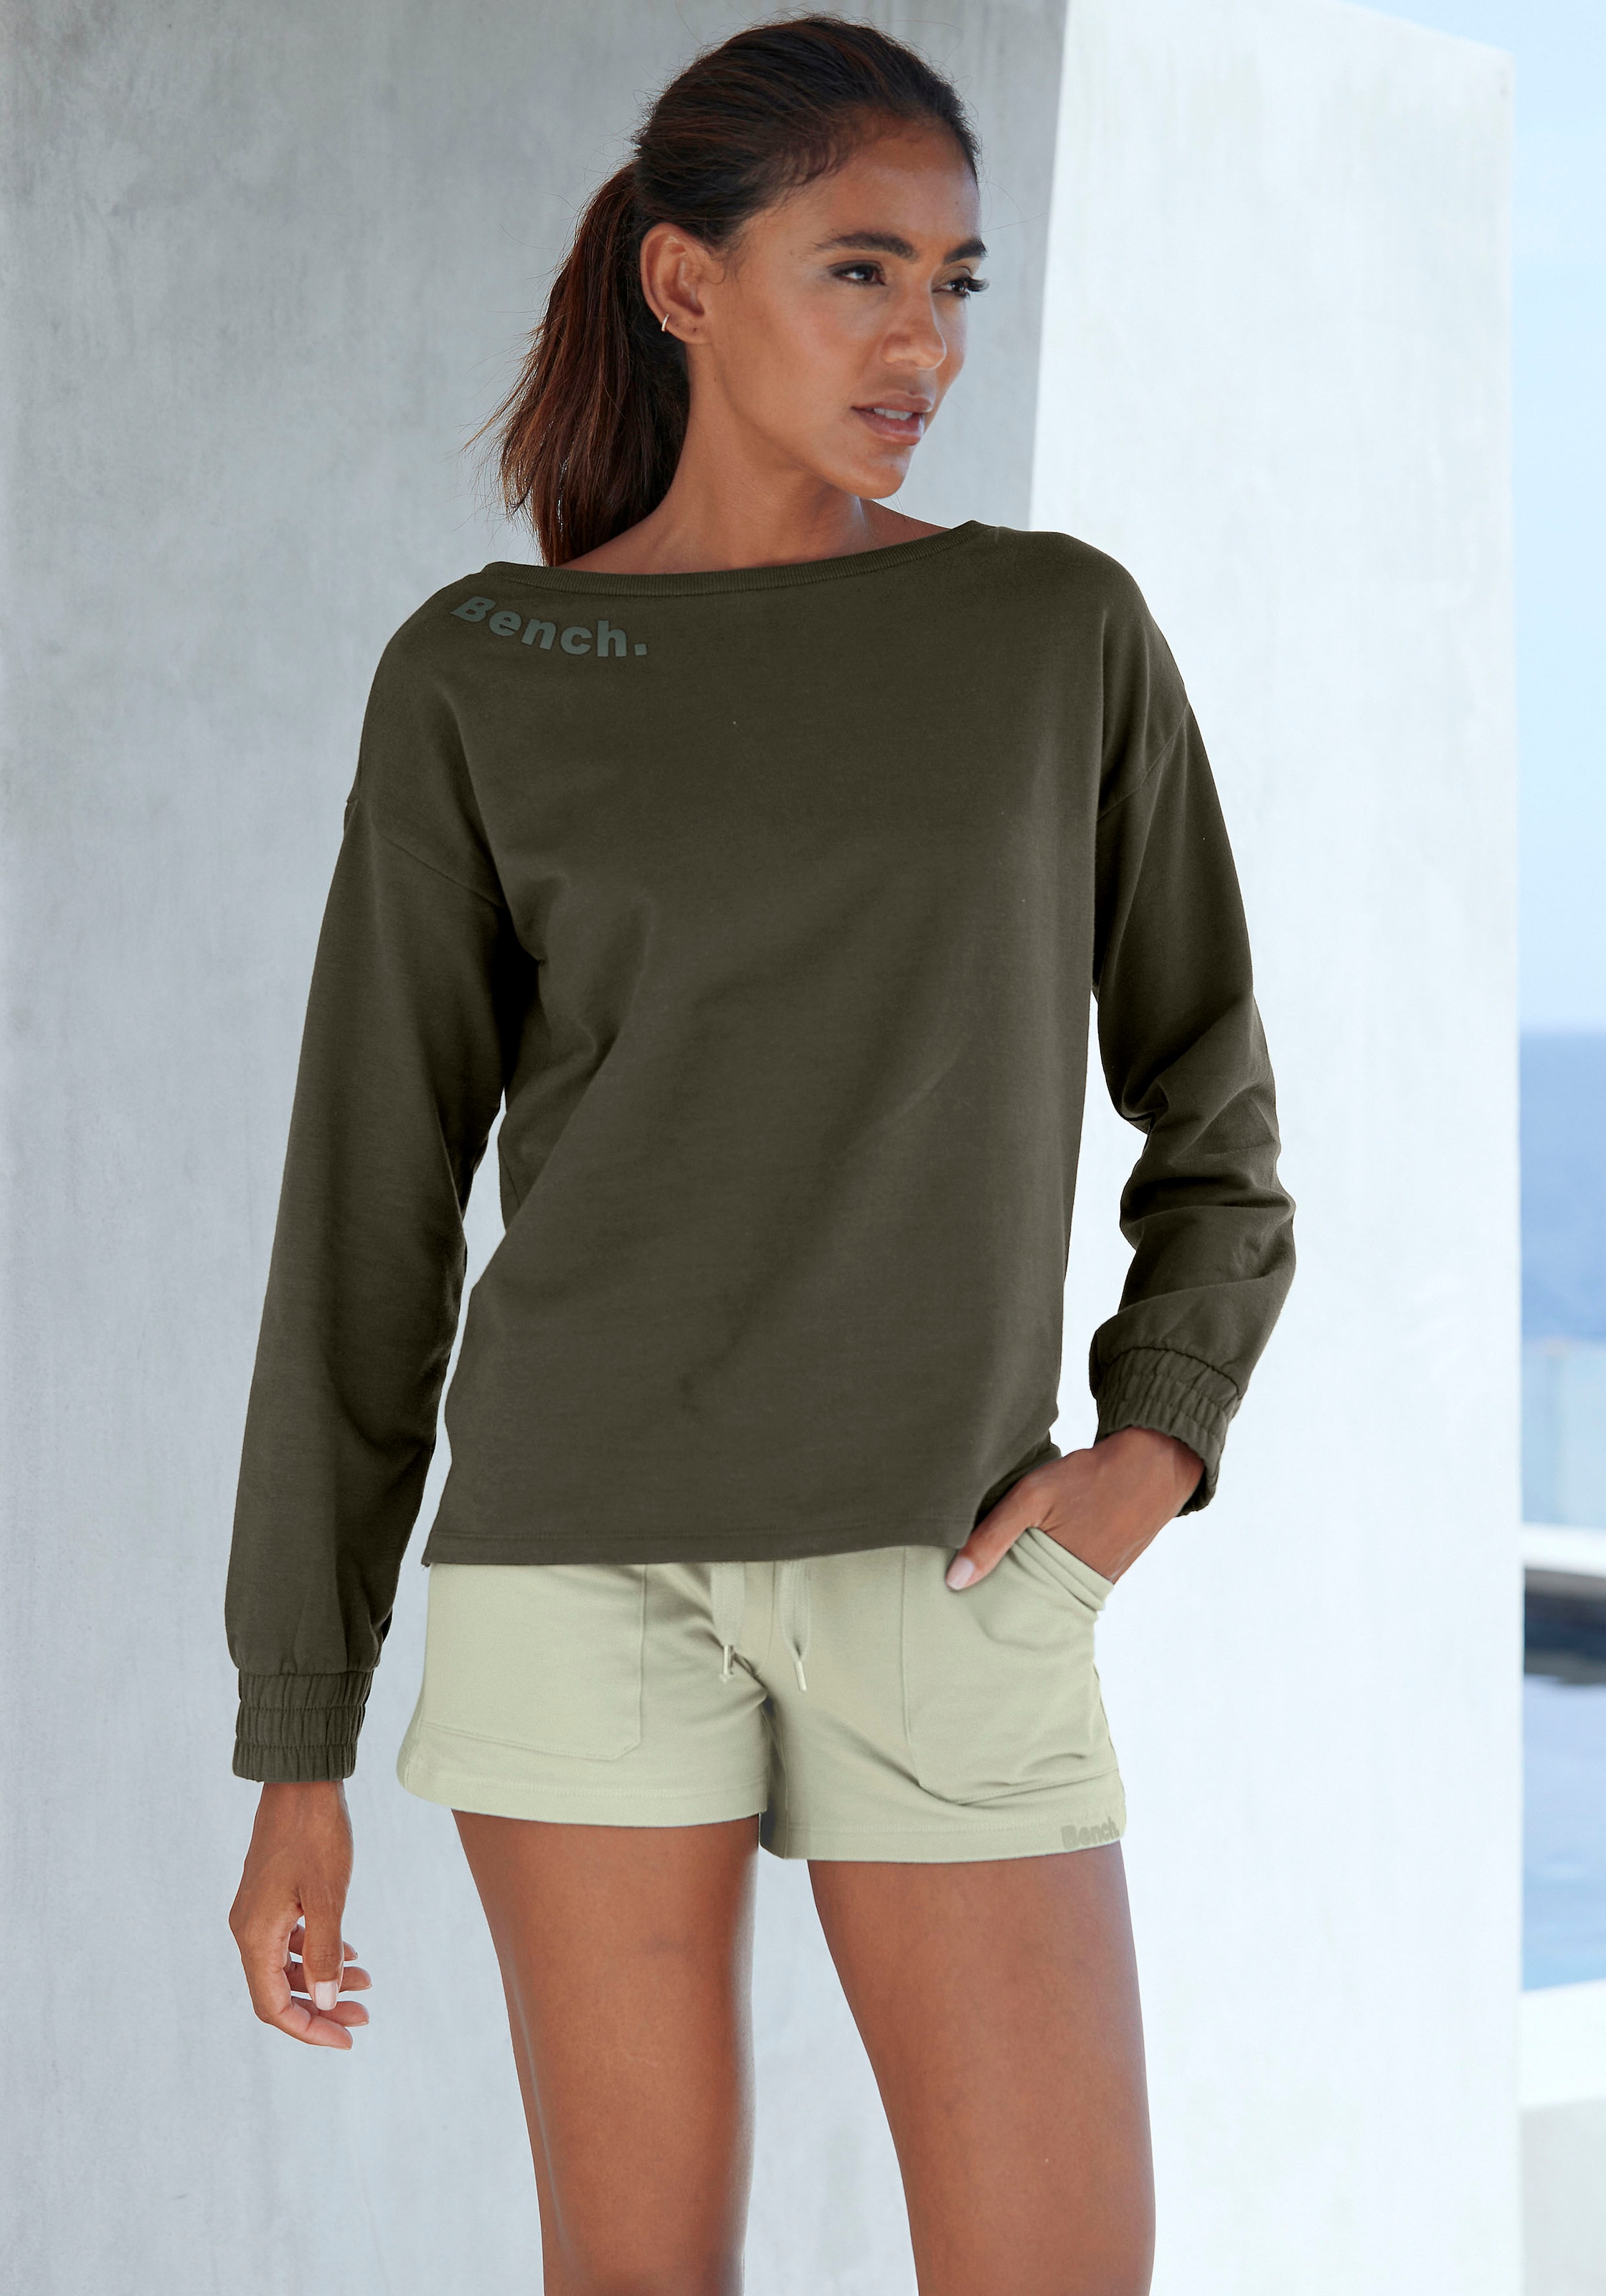 Bench. Loungewear Ärmelbündchen, Loungeanzug Online Shop OTTO mit im Sweatshirt, gerafften